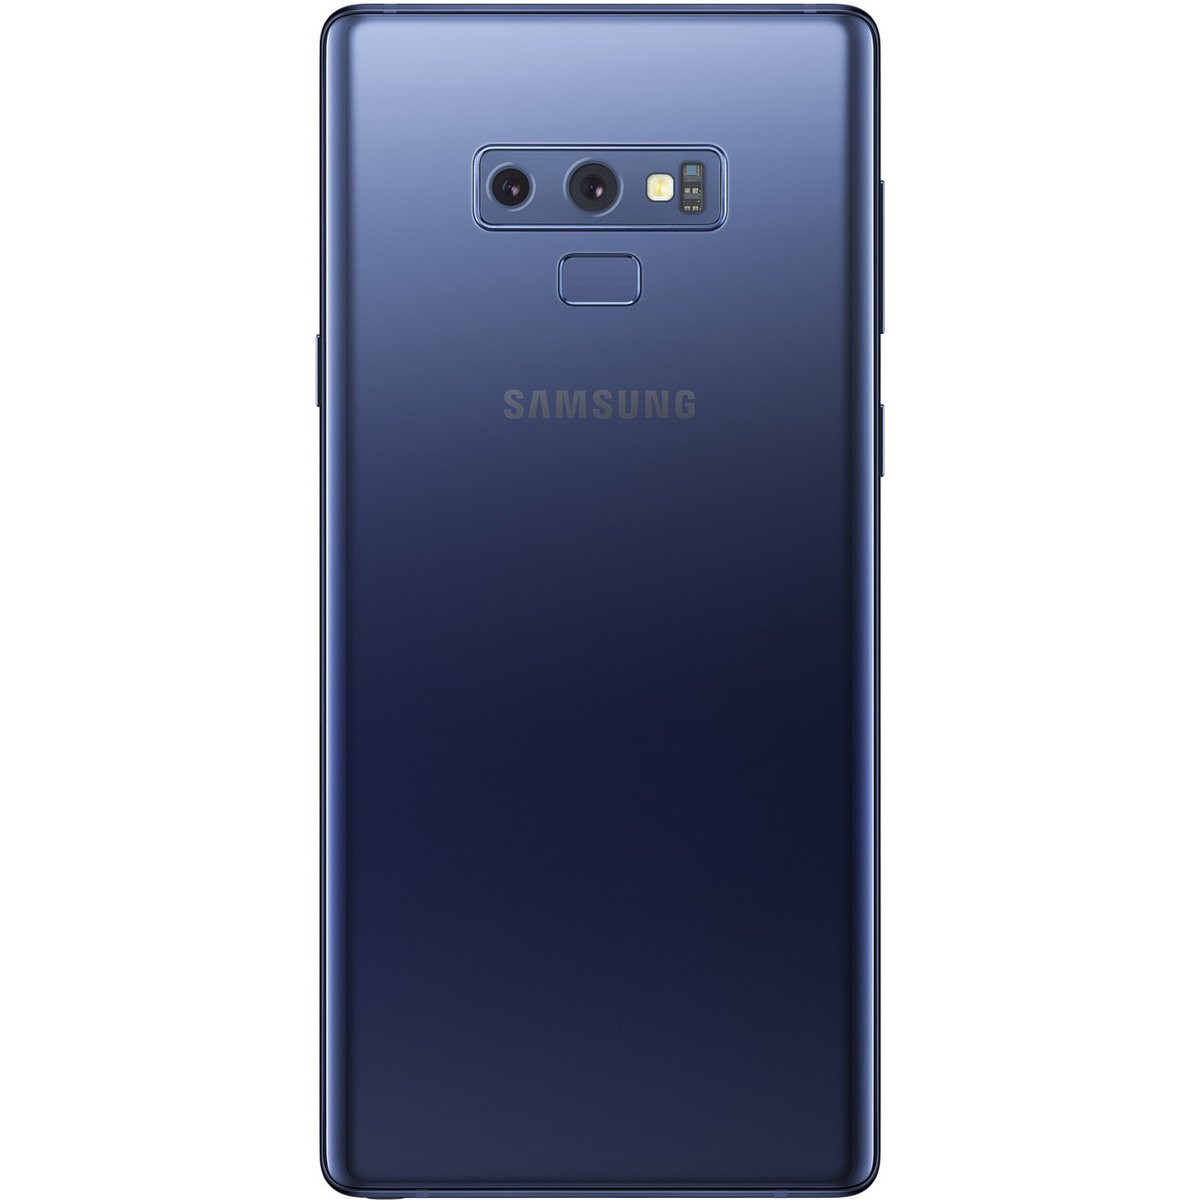 Samsung Galaxy Note9 SMN960F 128GB Blue